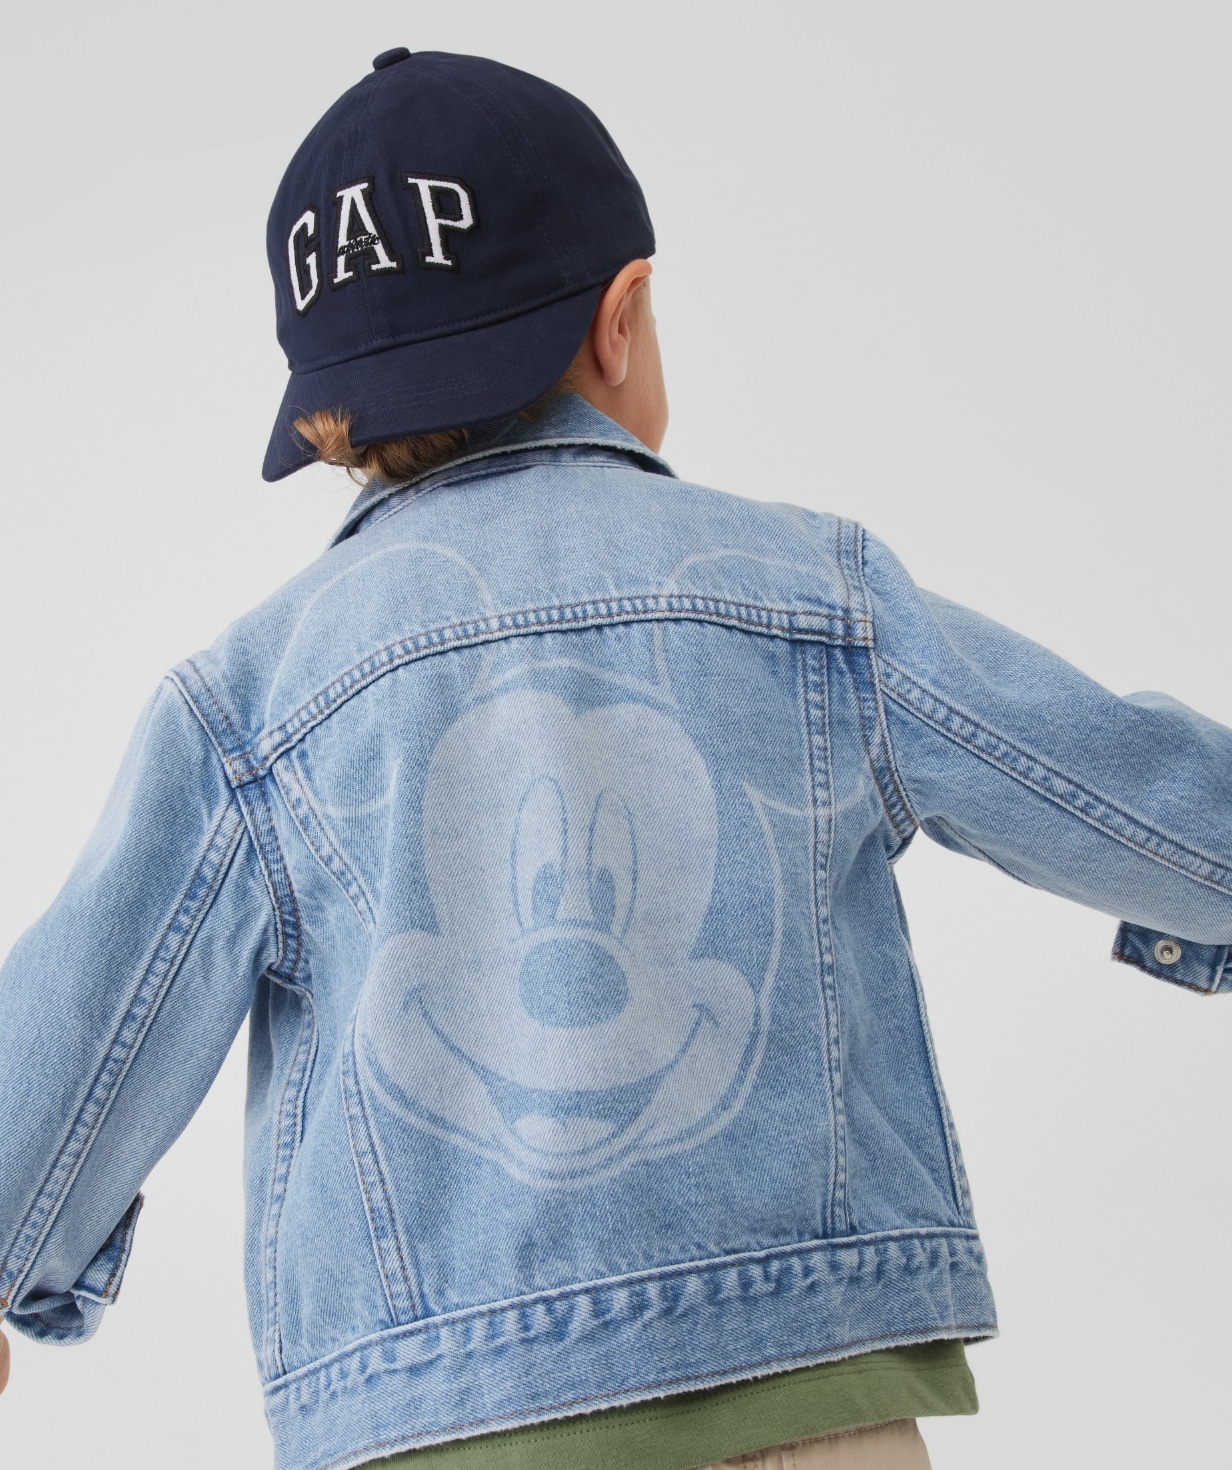 Shop GapKids for Kids Clothes | Gap